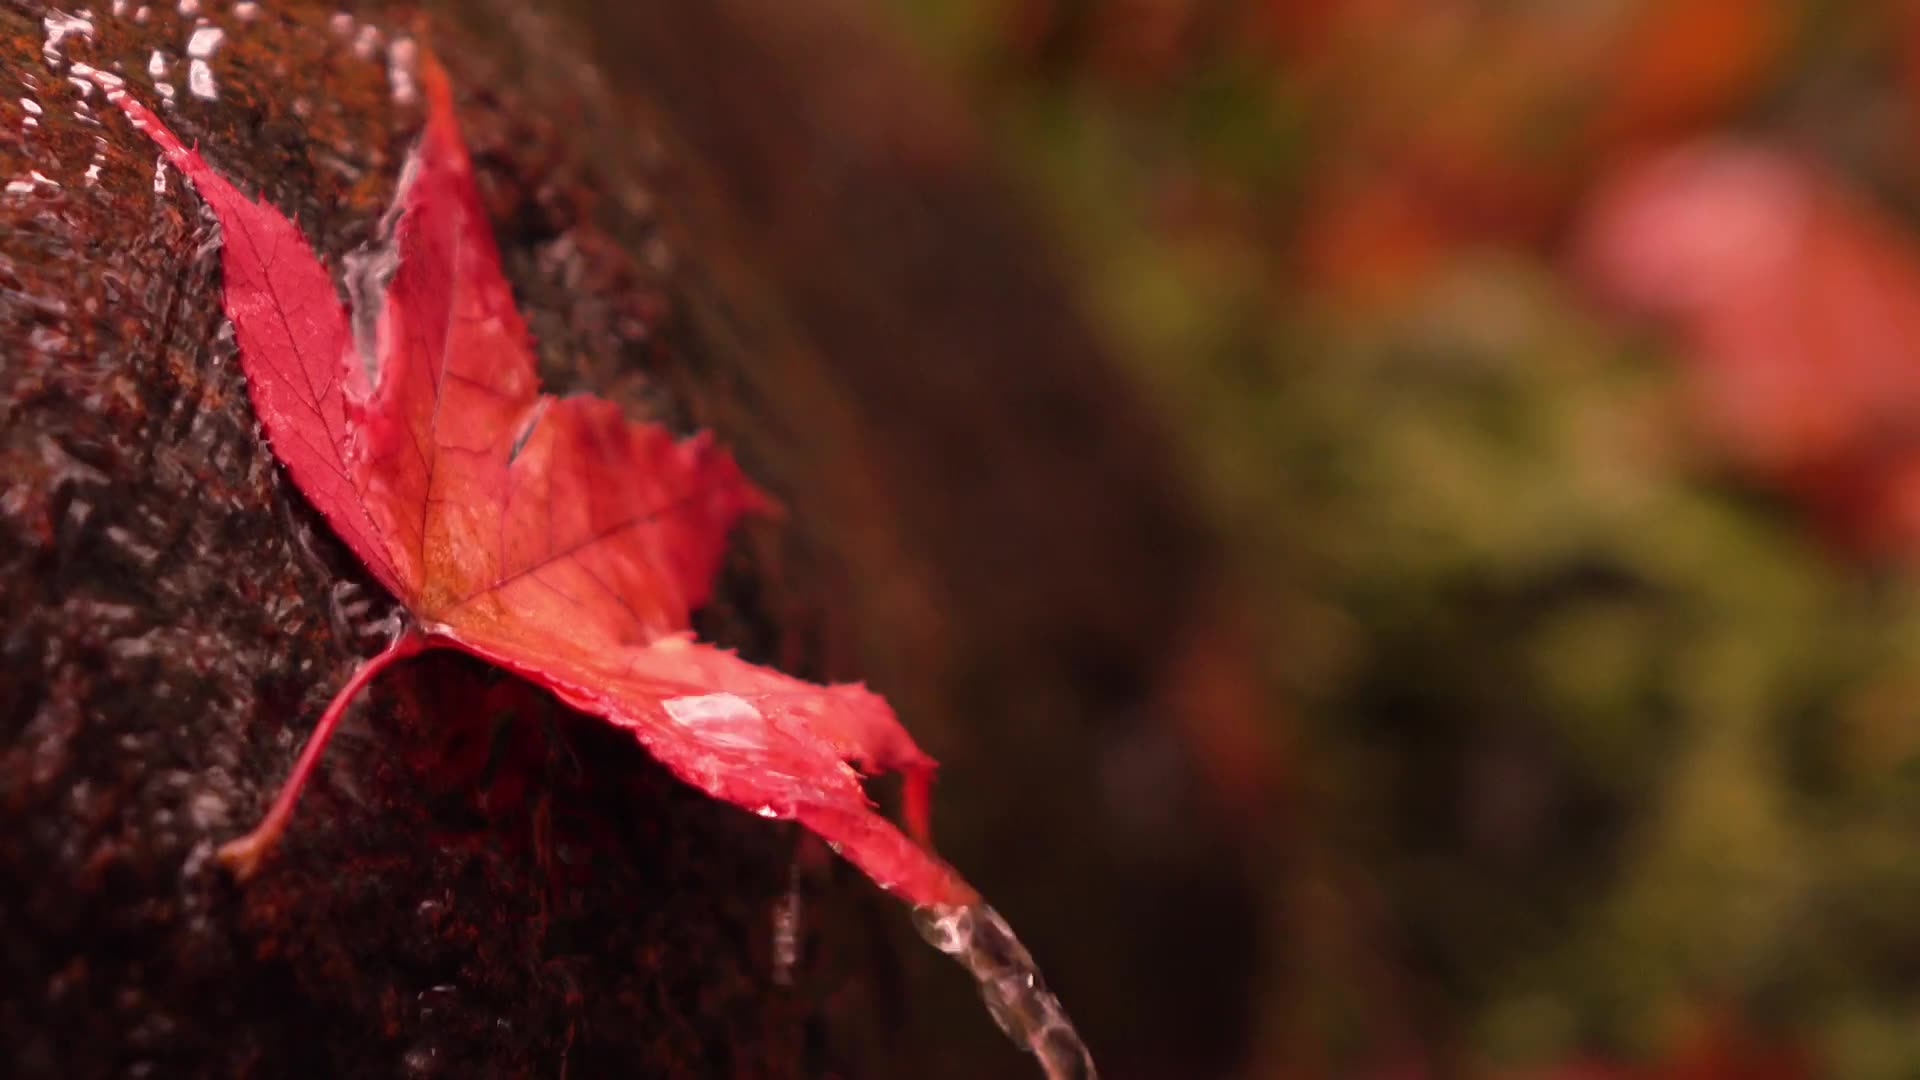 超美落红飘叶 4k 祇王寺京都の紅葉京都の庭園 哔哩哔哩 つロ干杯 Bilibili